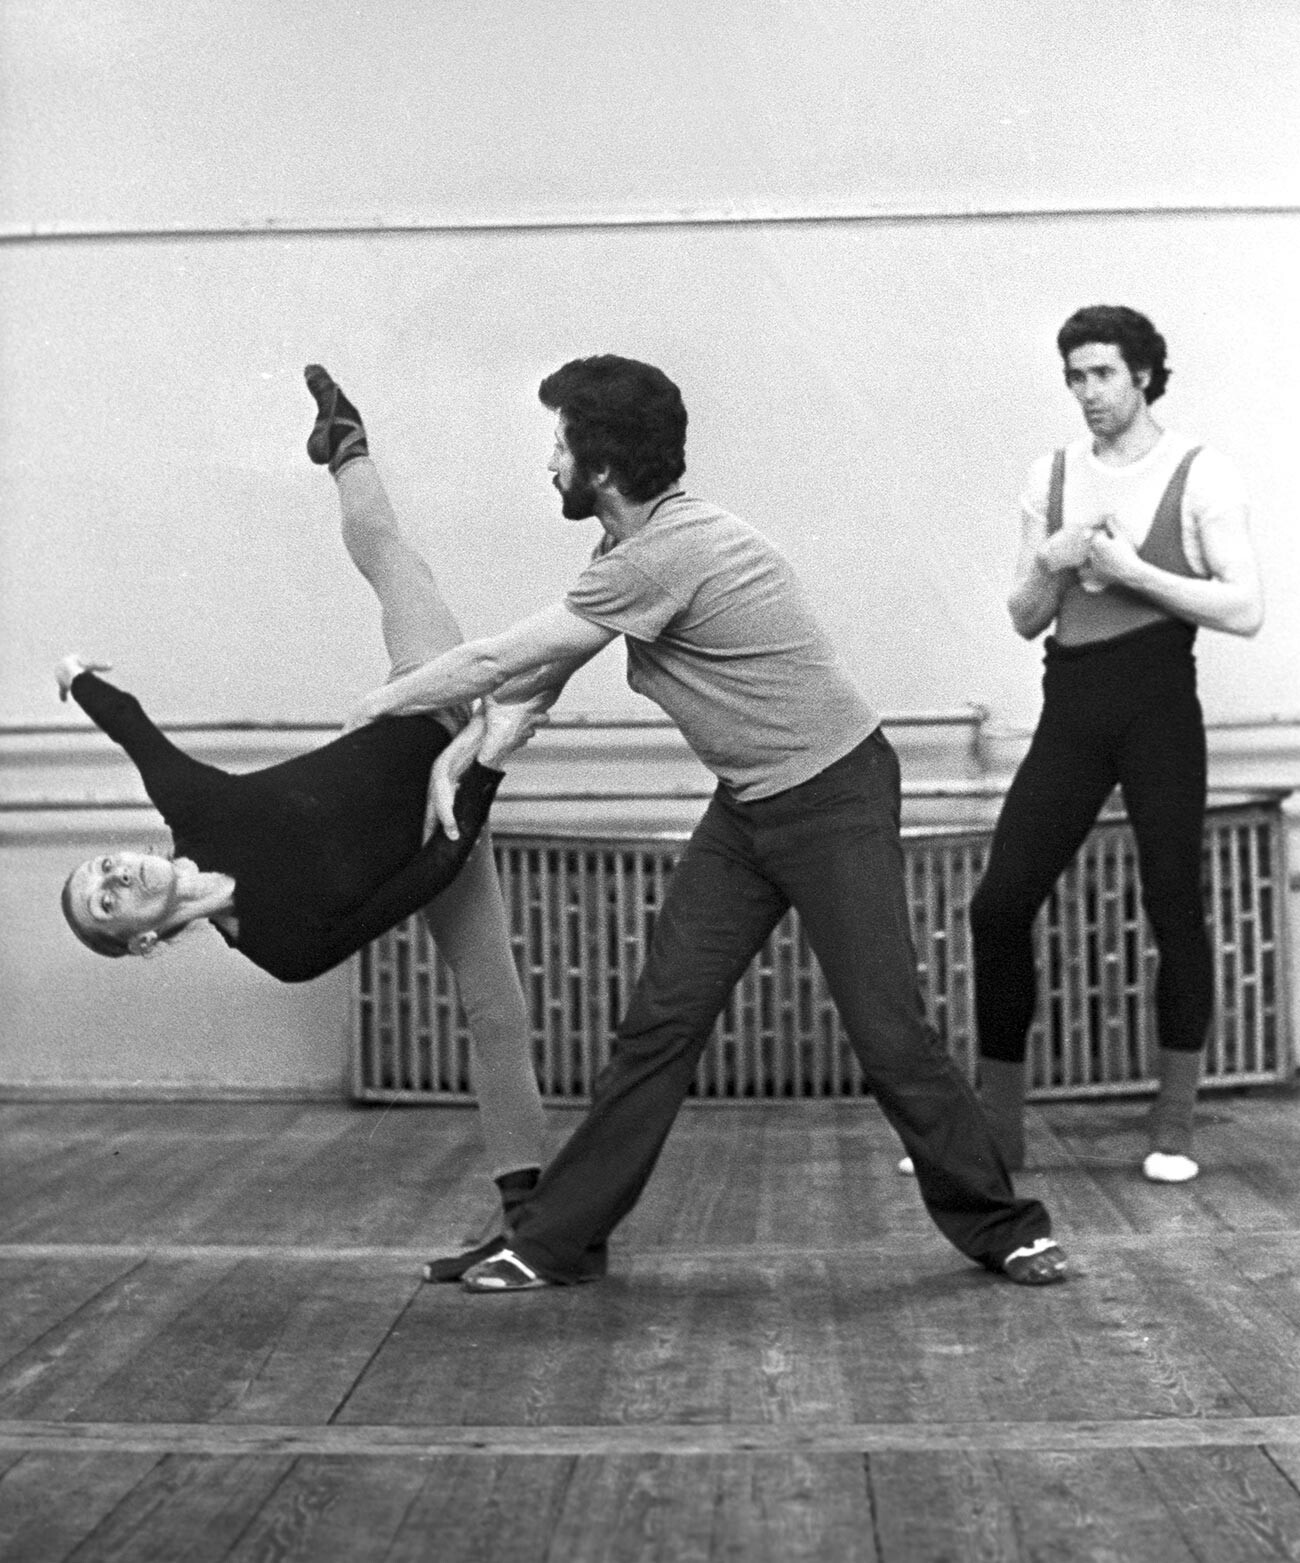 Ballet artists during rehearsal: Alla Osipenko, John Markovski and choreographer Boris Eifman, 1978